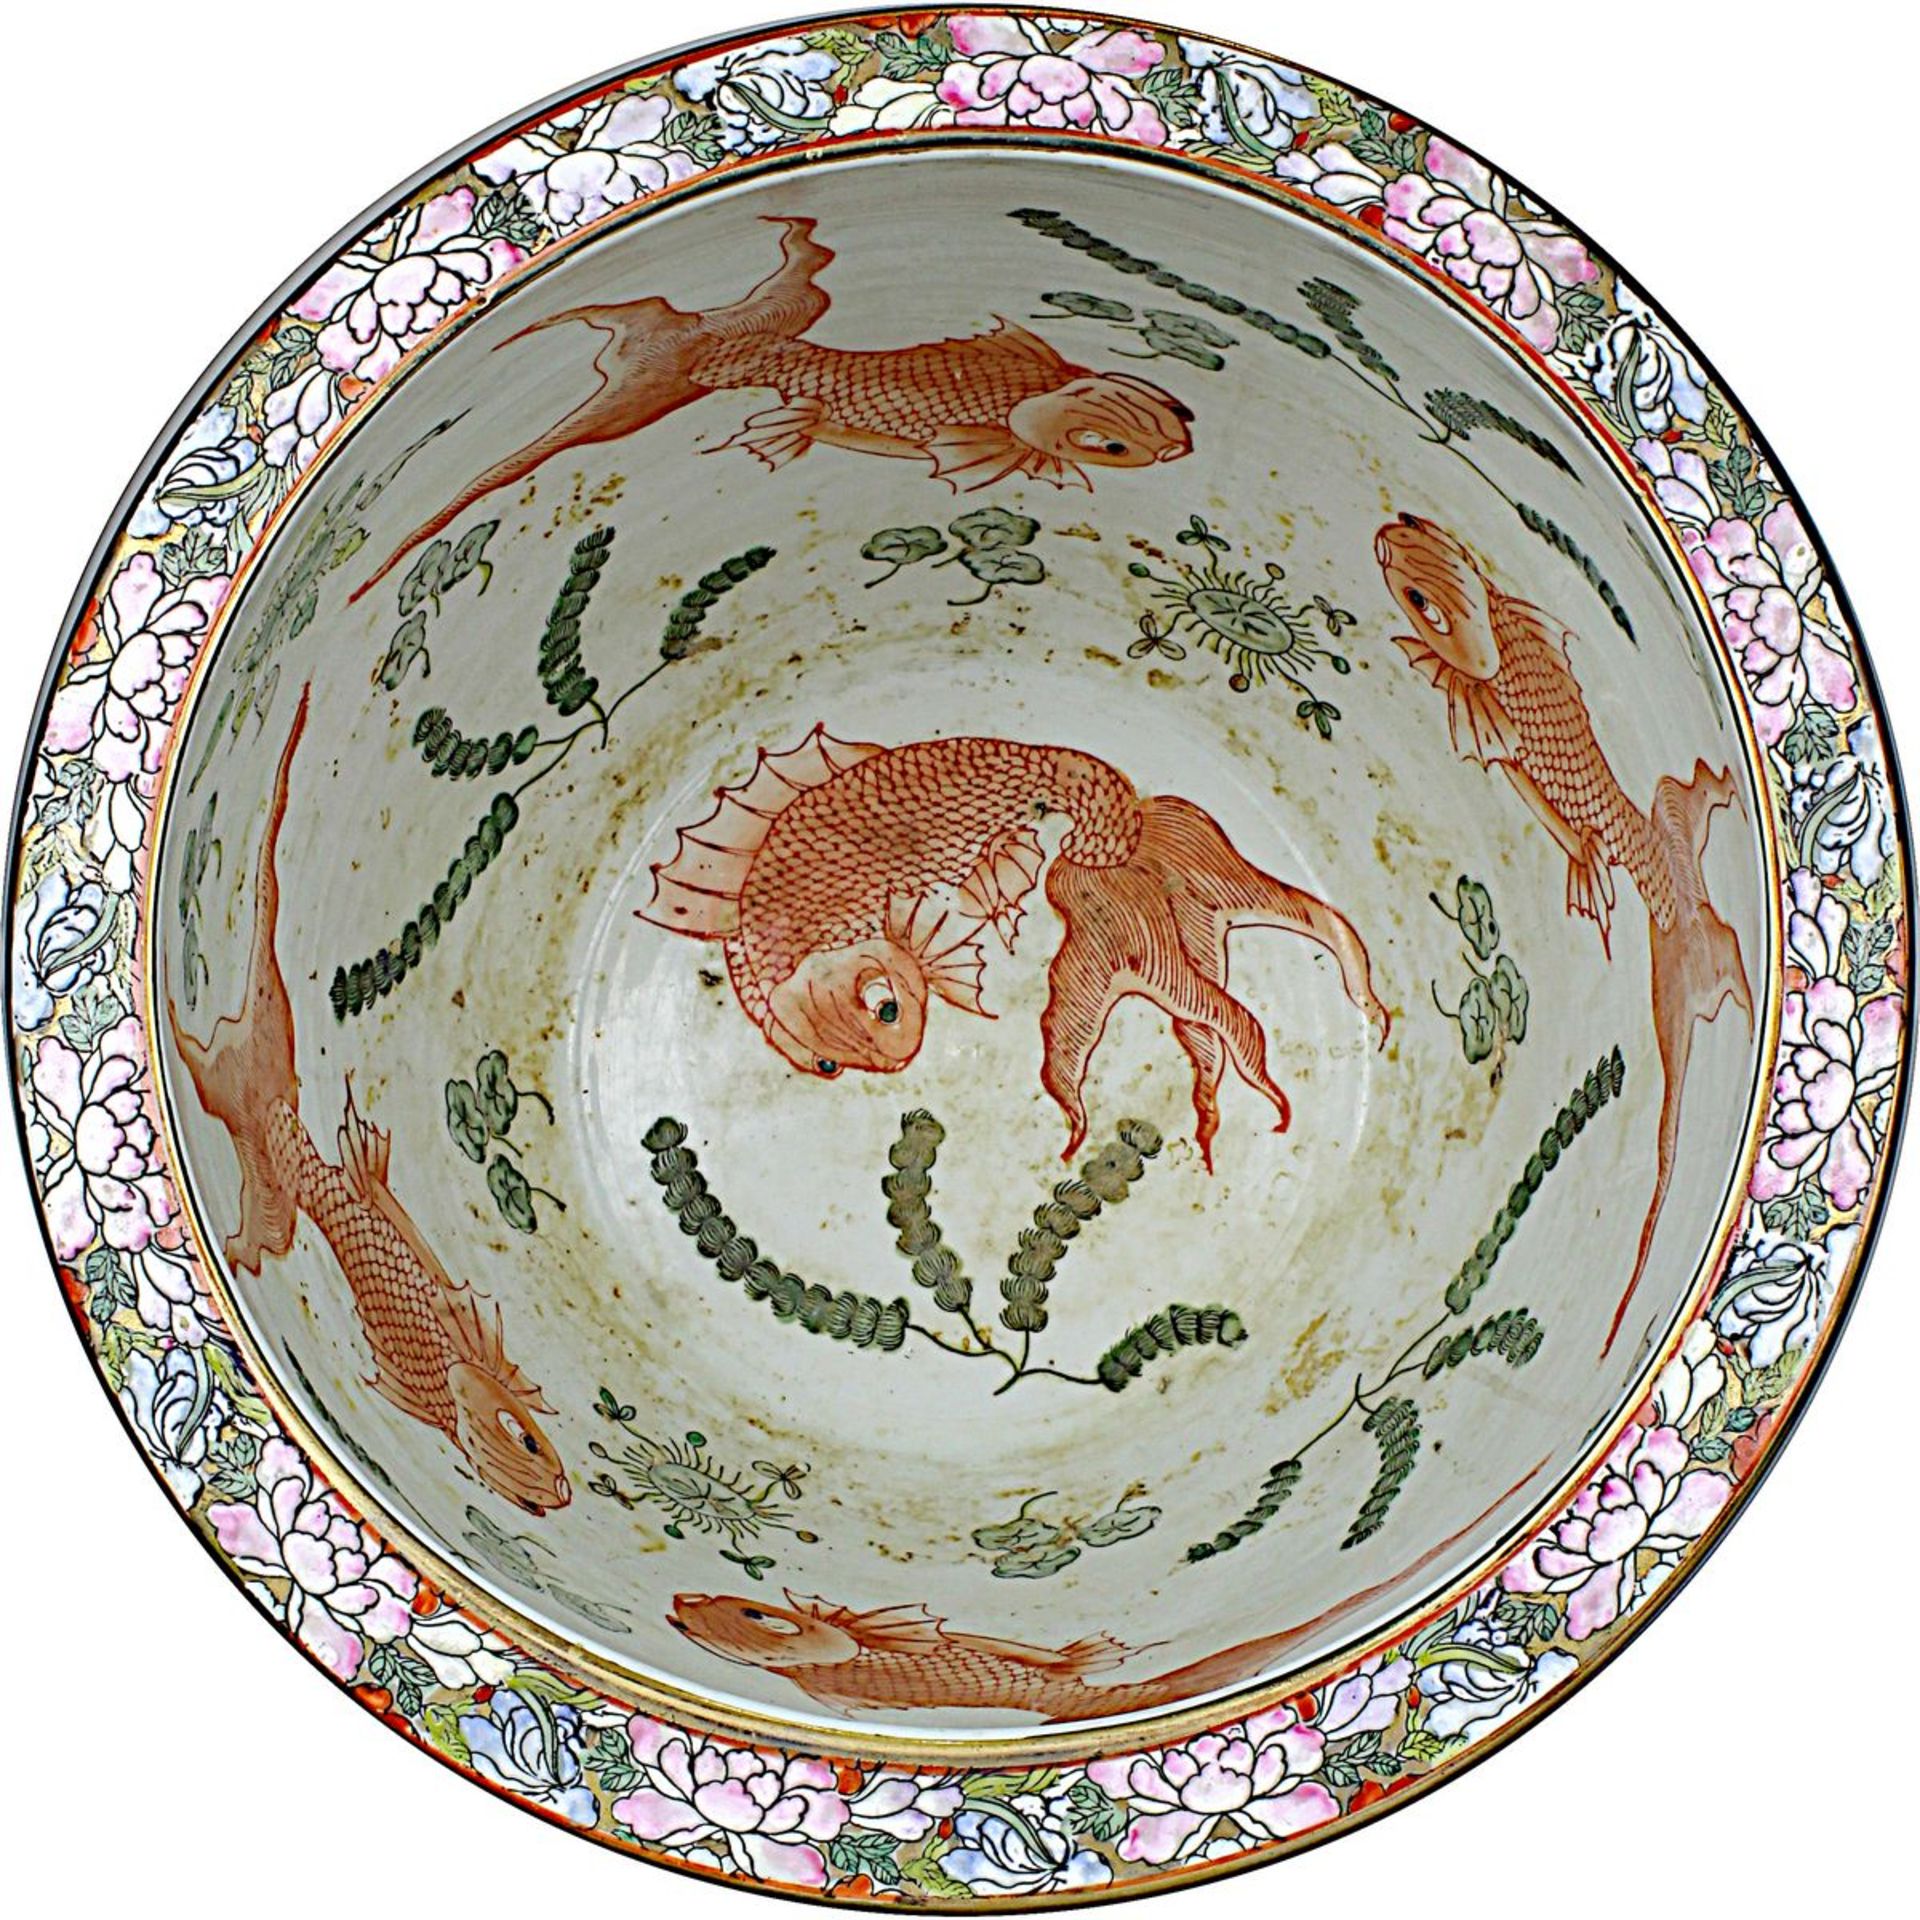 Goldfischbecken, Porzellan heller Scherben, China 20. Jh., farbig staffiert, unter anderem in - Bild 2 aus 2